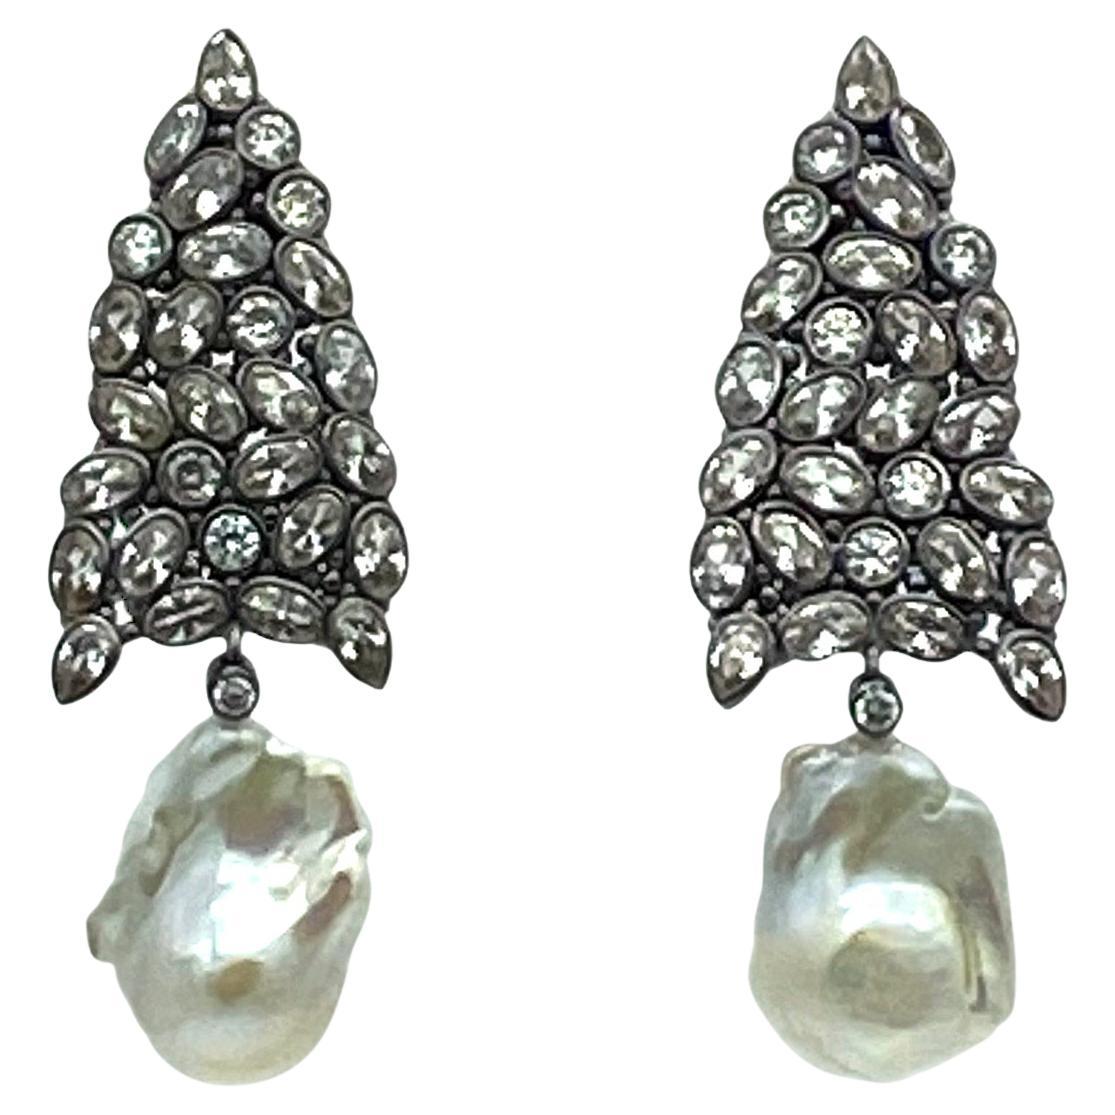 Boucles d'oreilles baroques avec perles CZ